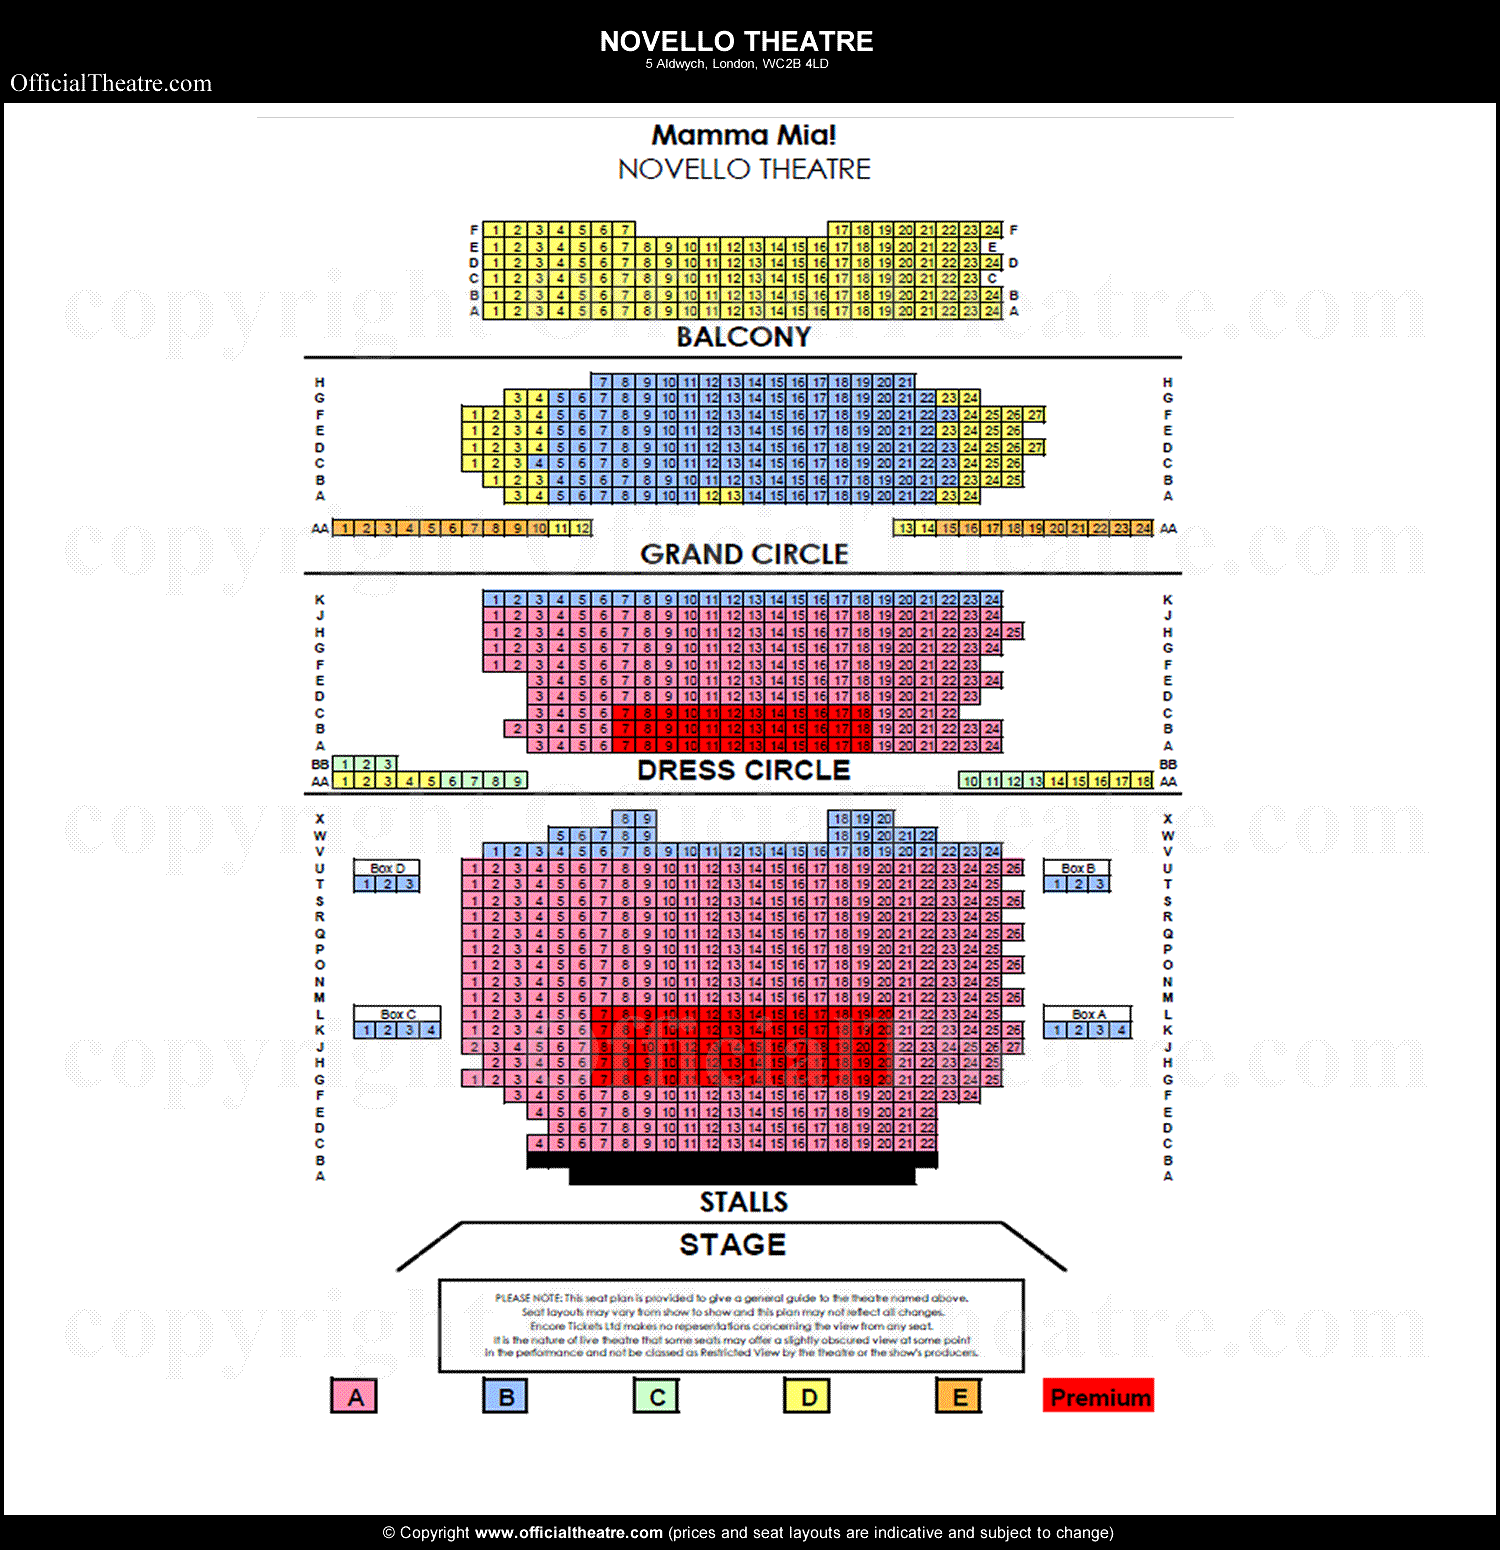 Novello Theatre seating plan